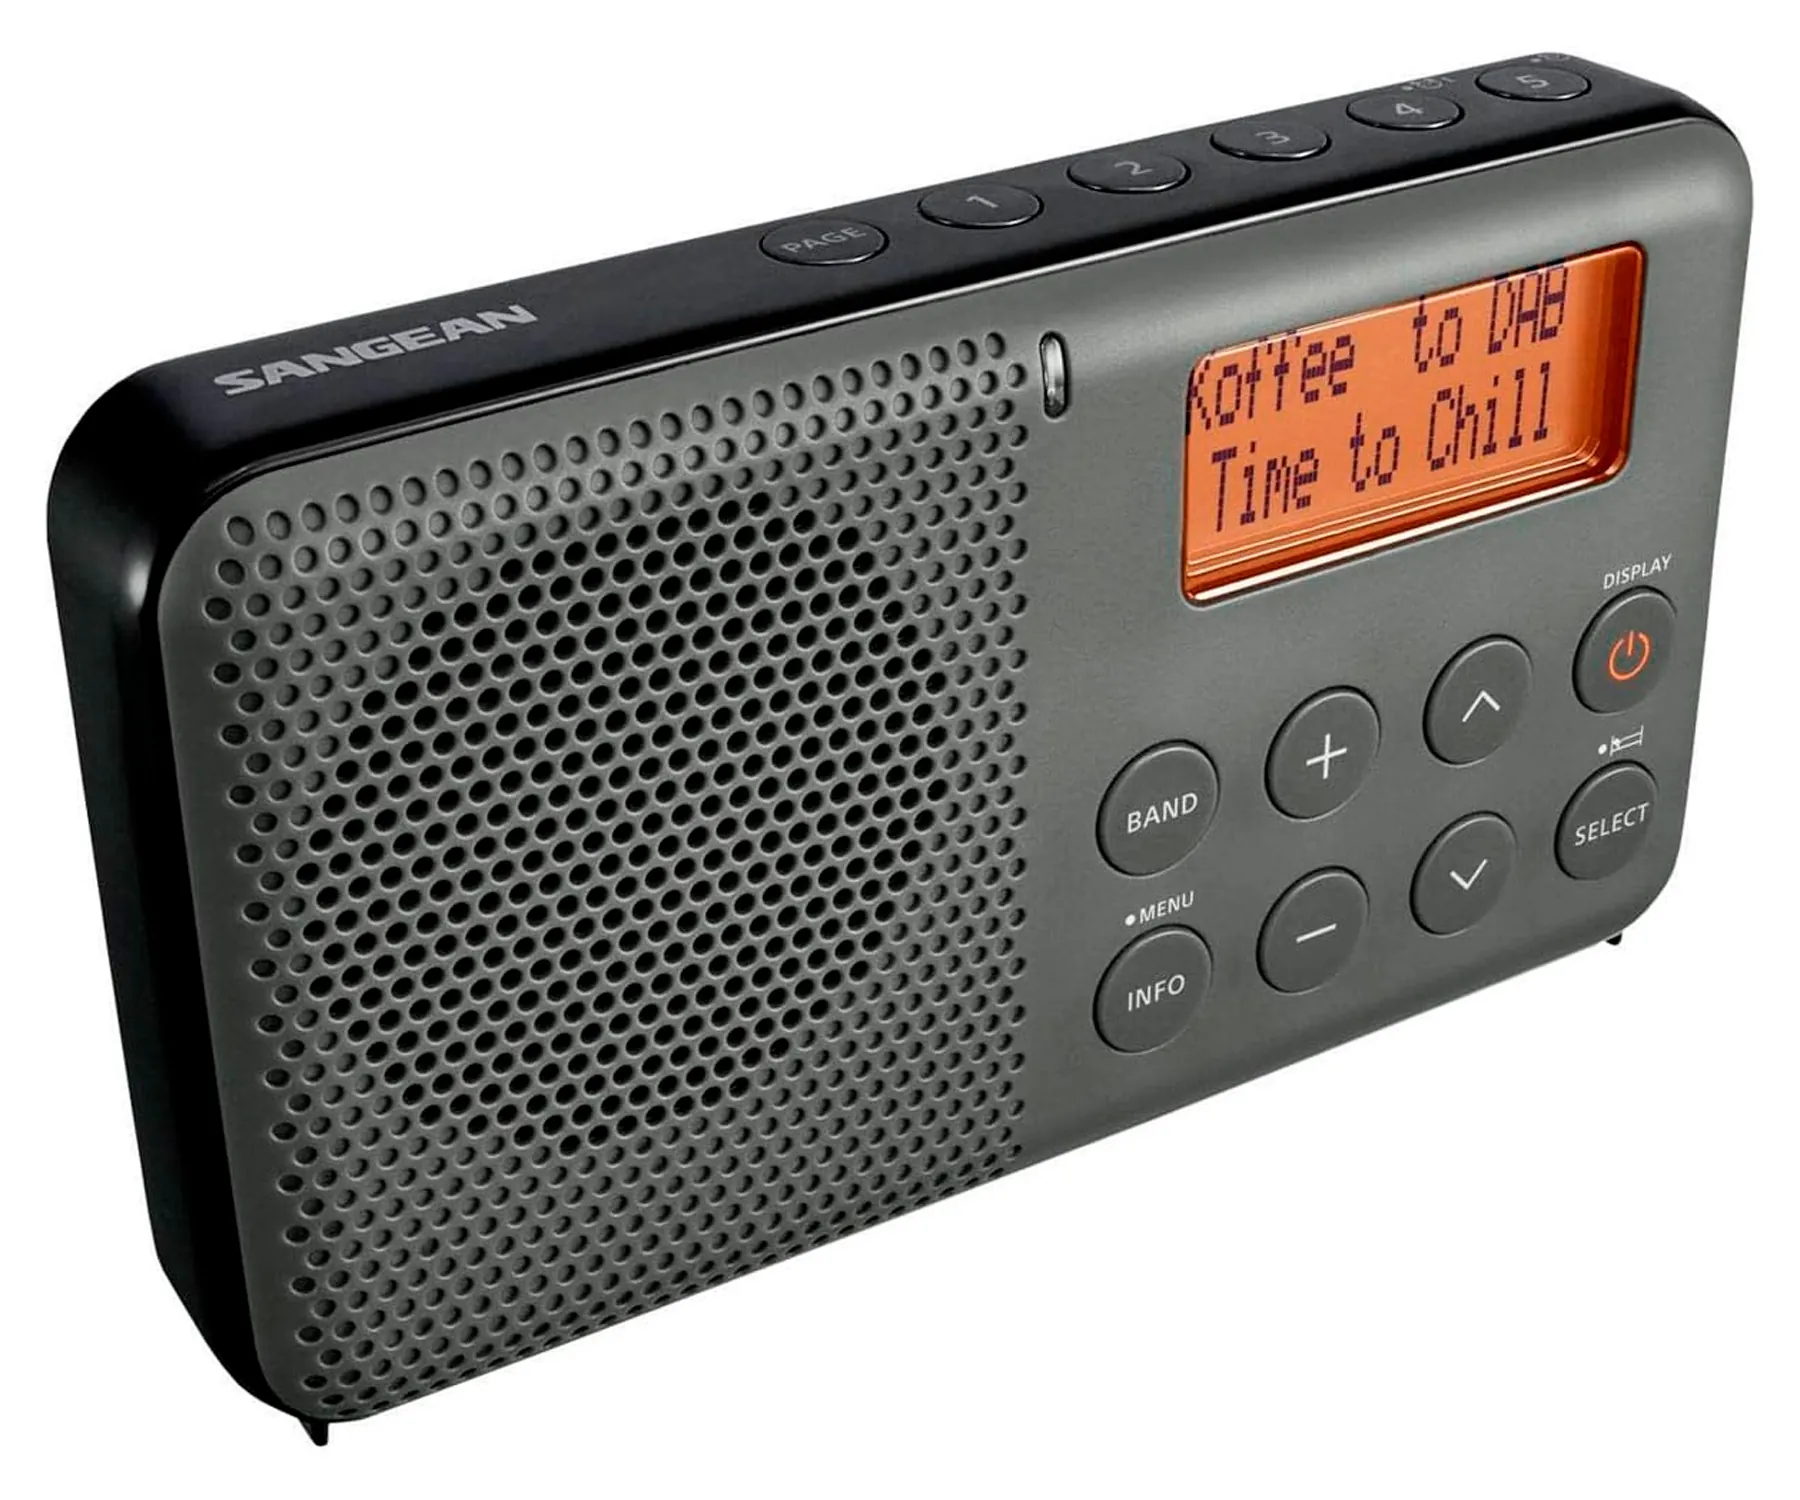 SANGEAN DPR-64 NEGRO RADIO DIGITAL DE BOLSILLO FM CON RDS Y DAB+ PANTALLA LCD ALARMA BATERÍA RECARGABLE